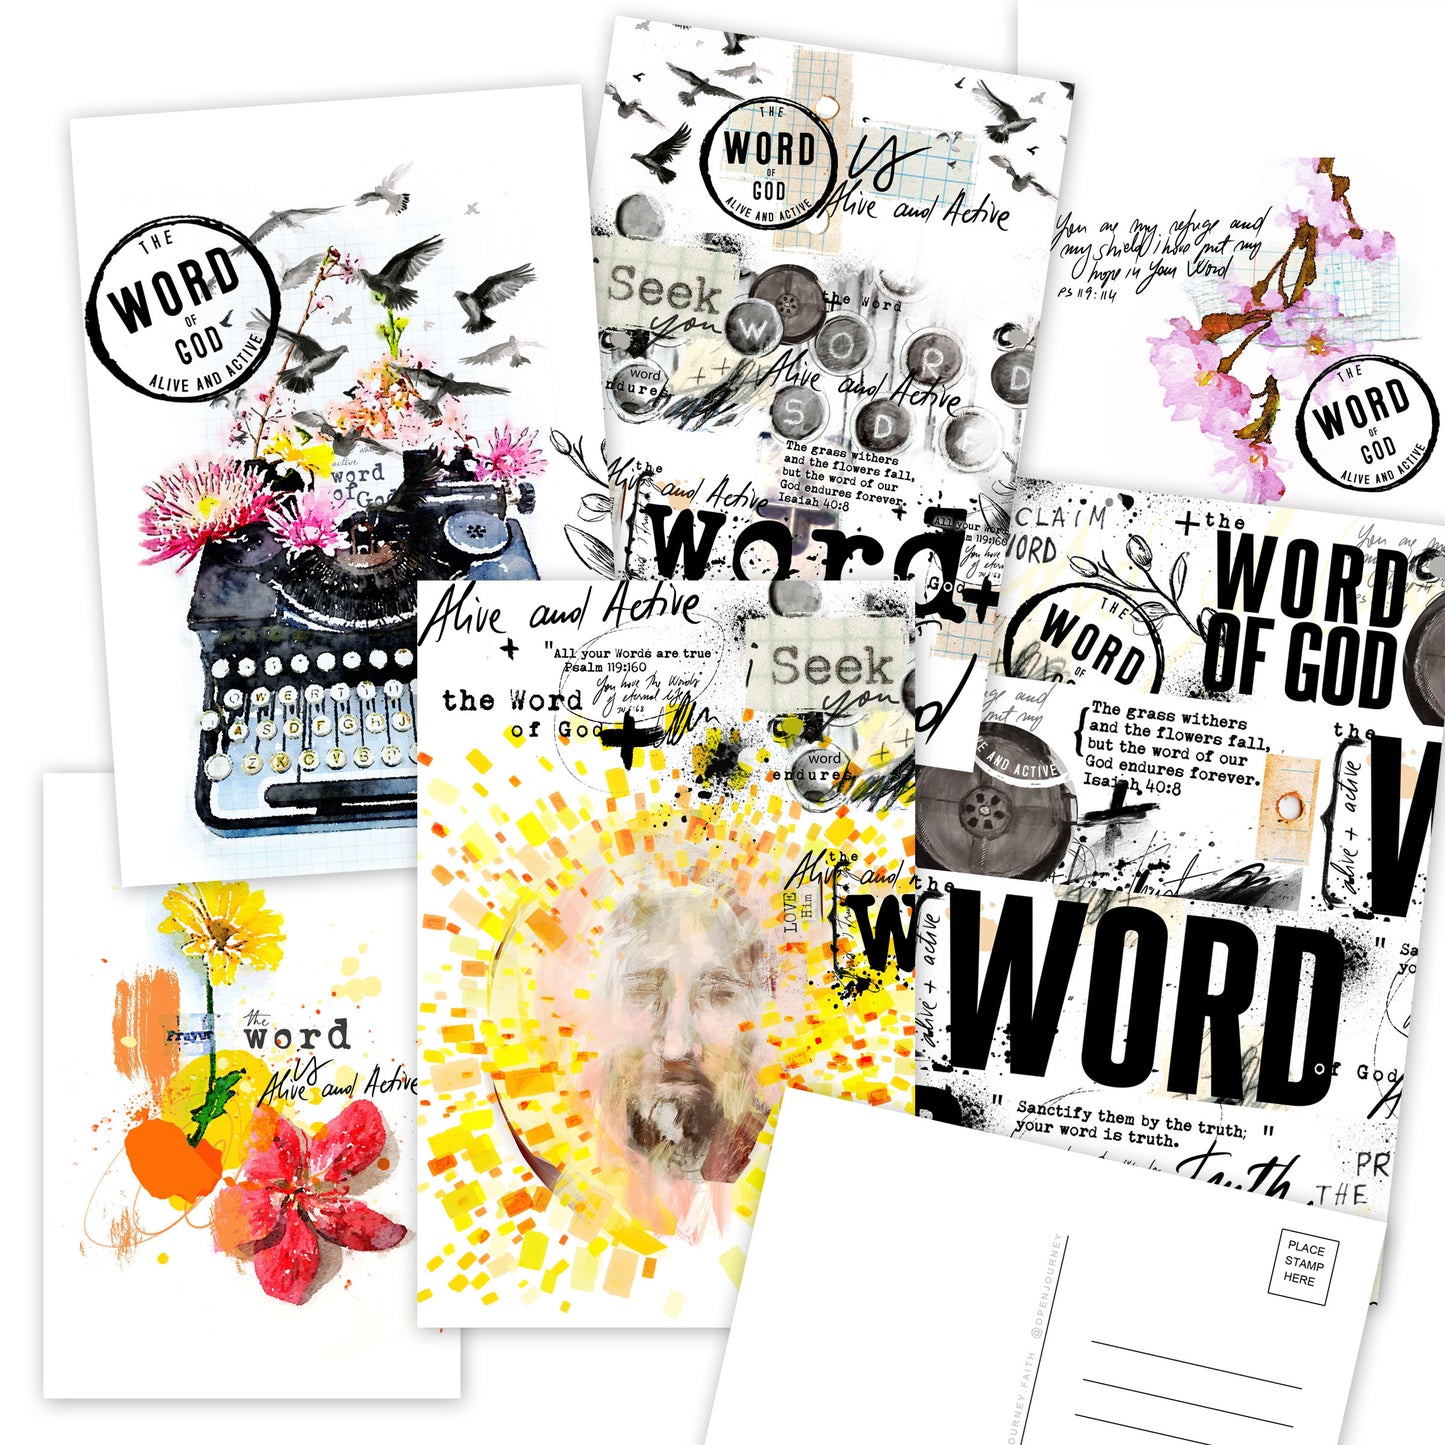 Word of God - set of 6 postcards